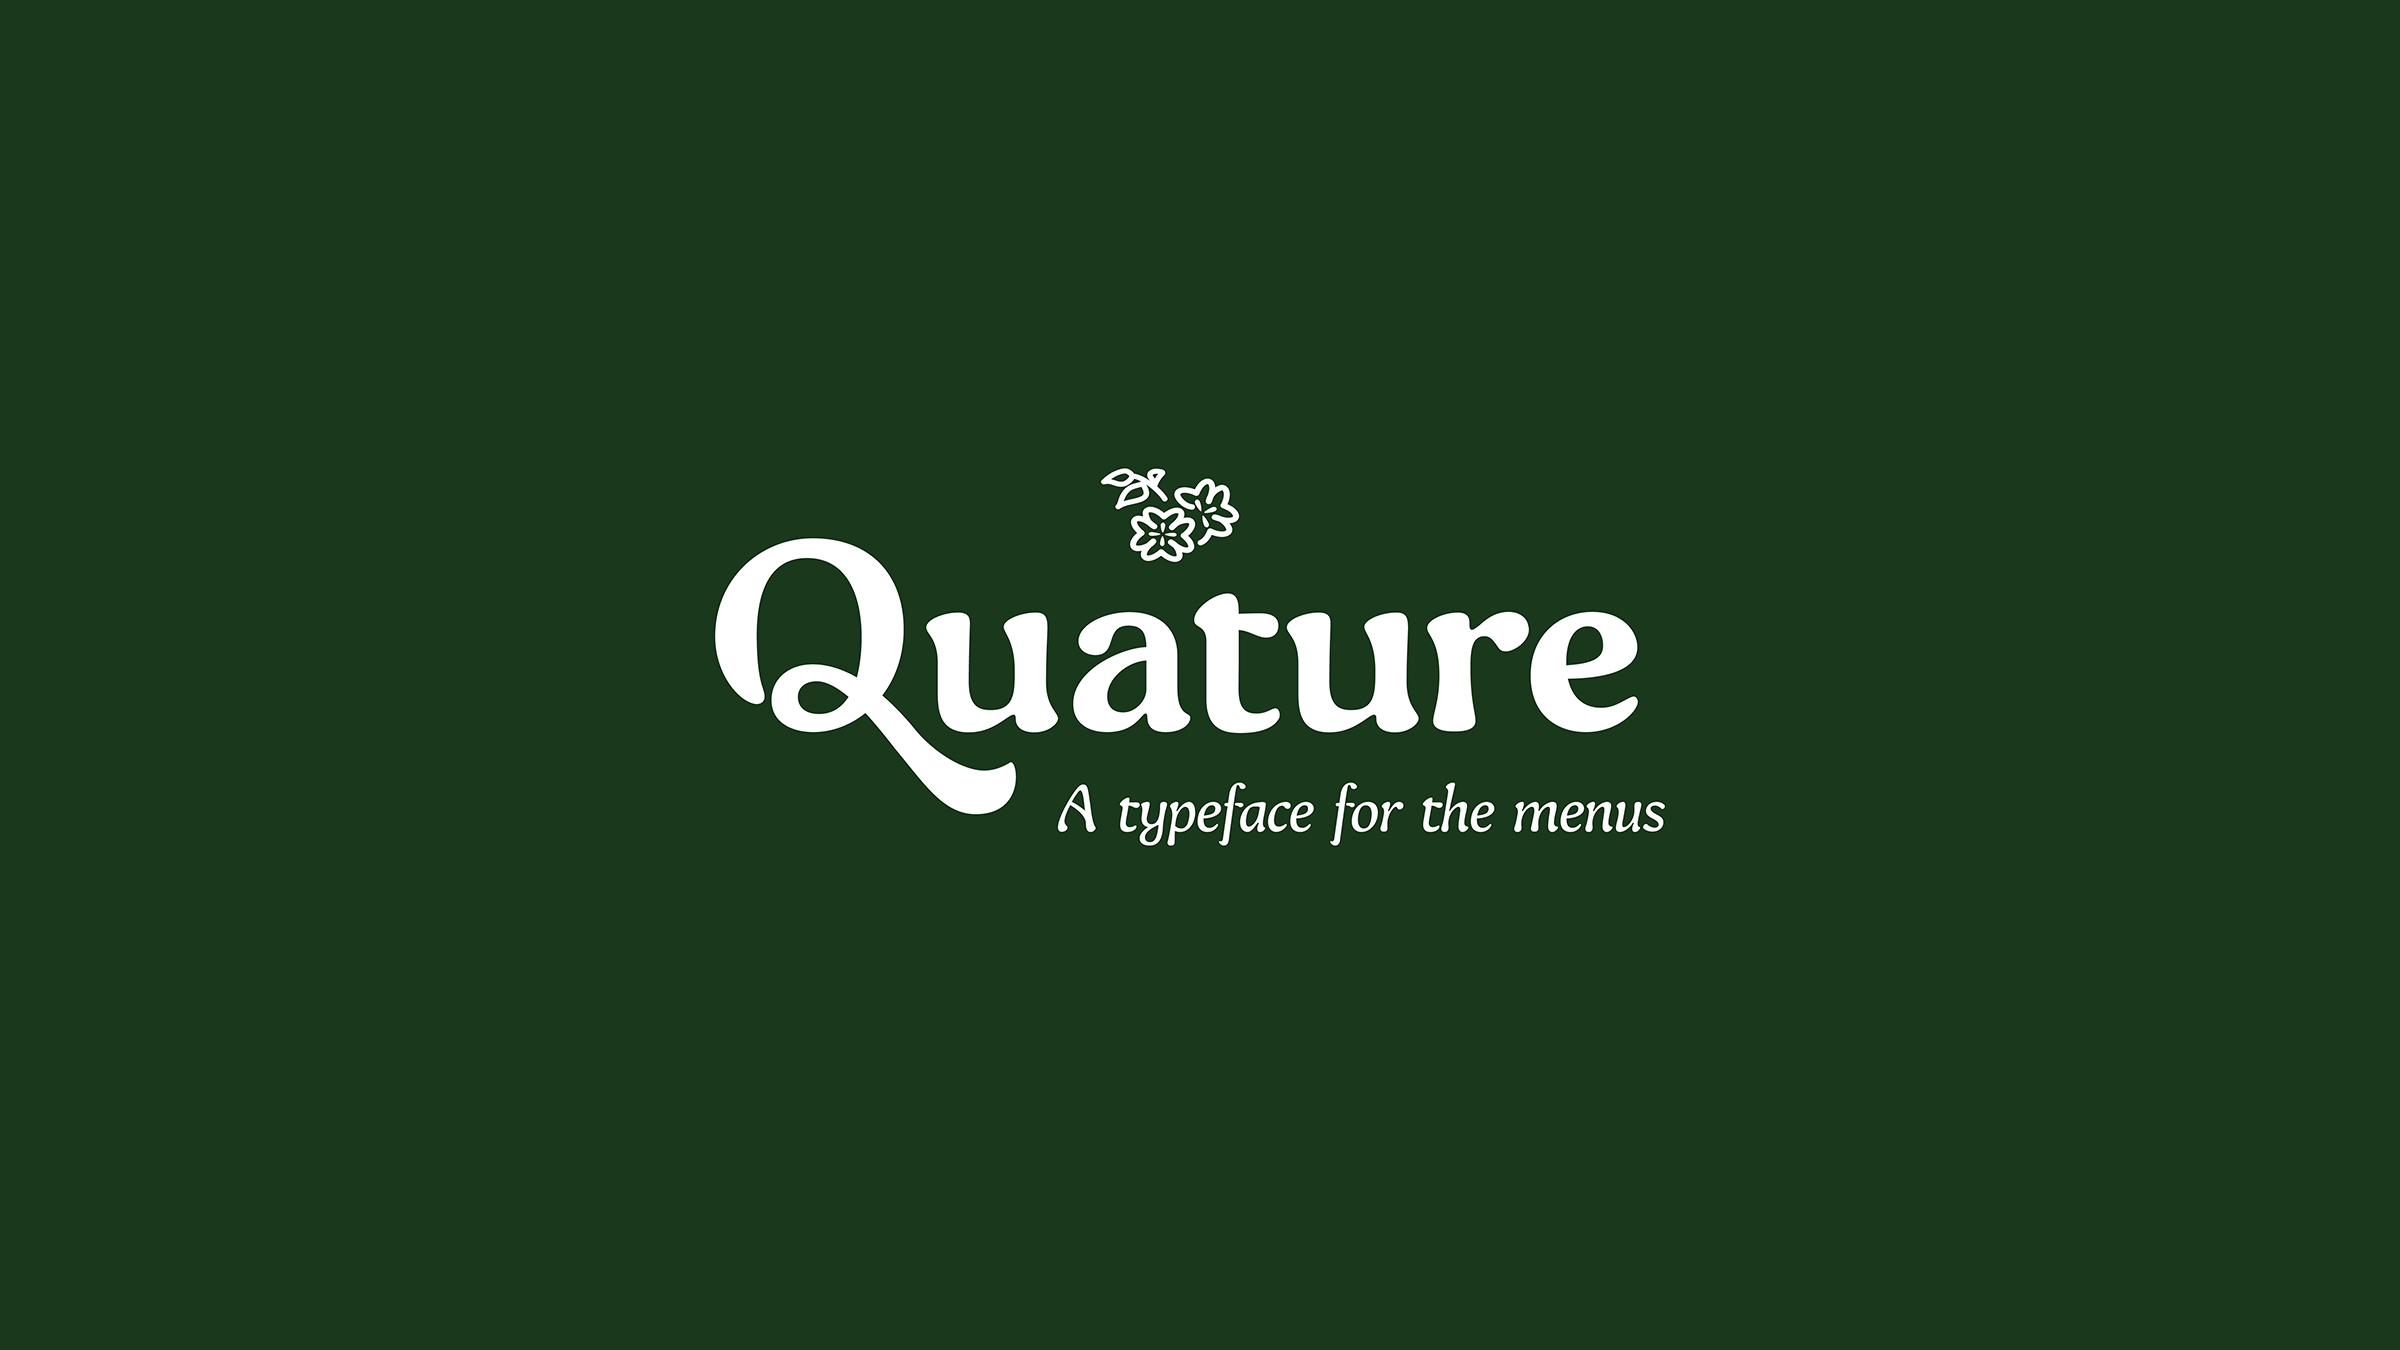 Quature_Presentation